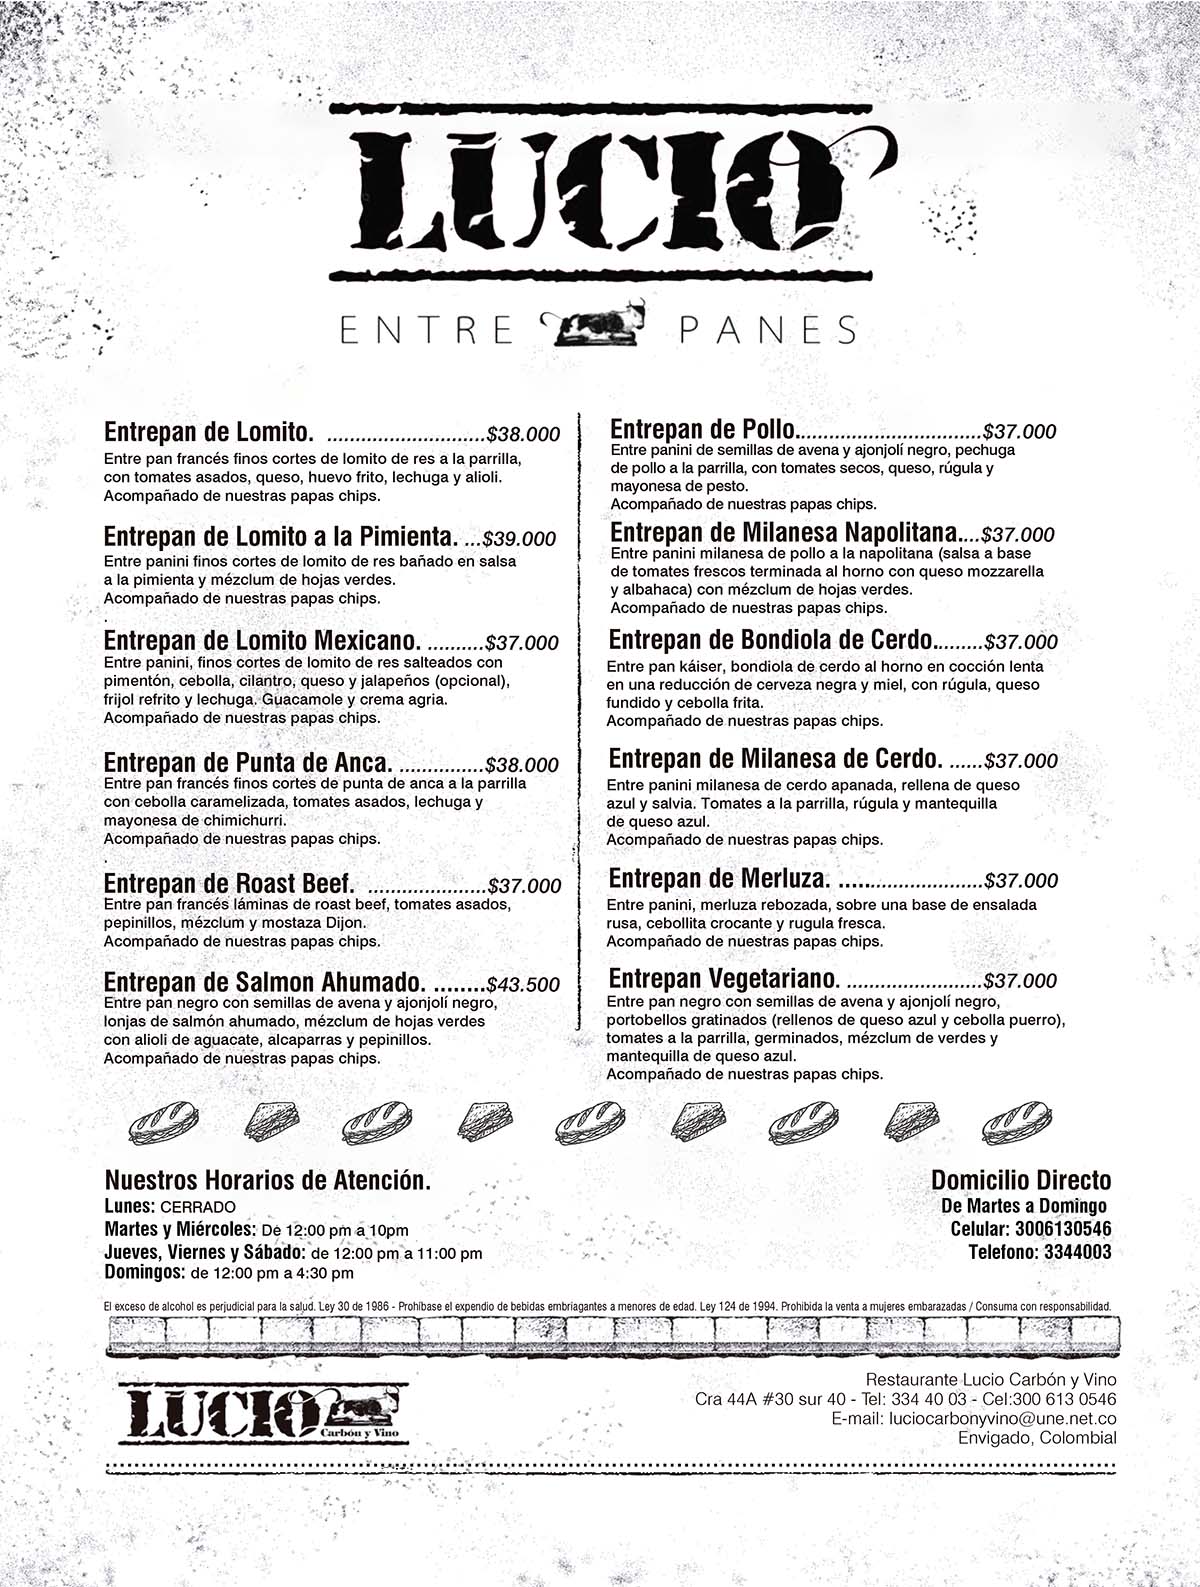 Carta Restaurante Lucio. carbón y vino